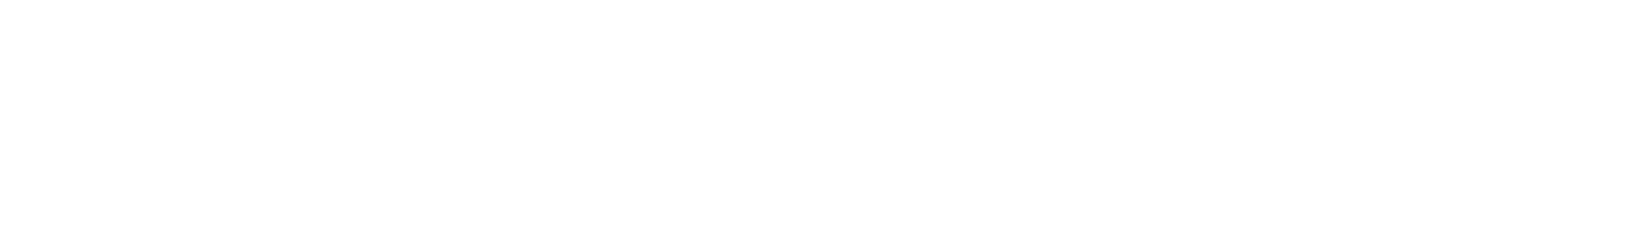 ev lab logo white